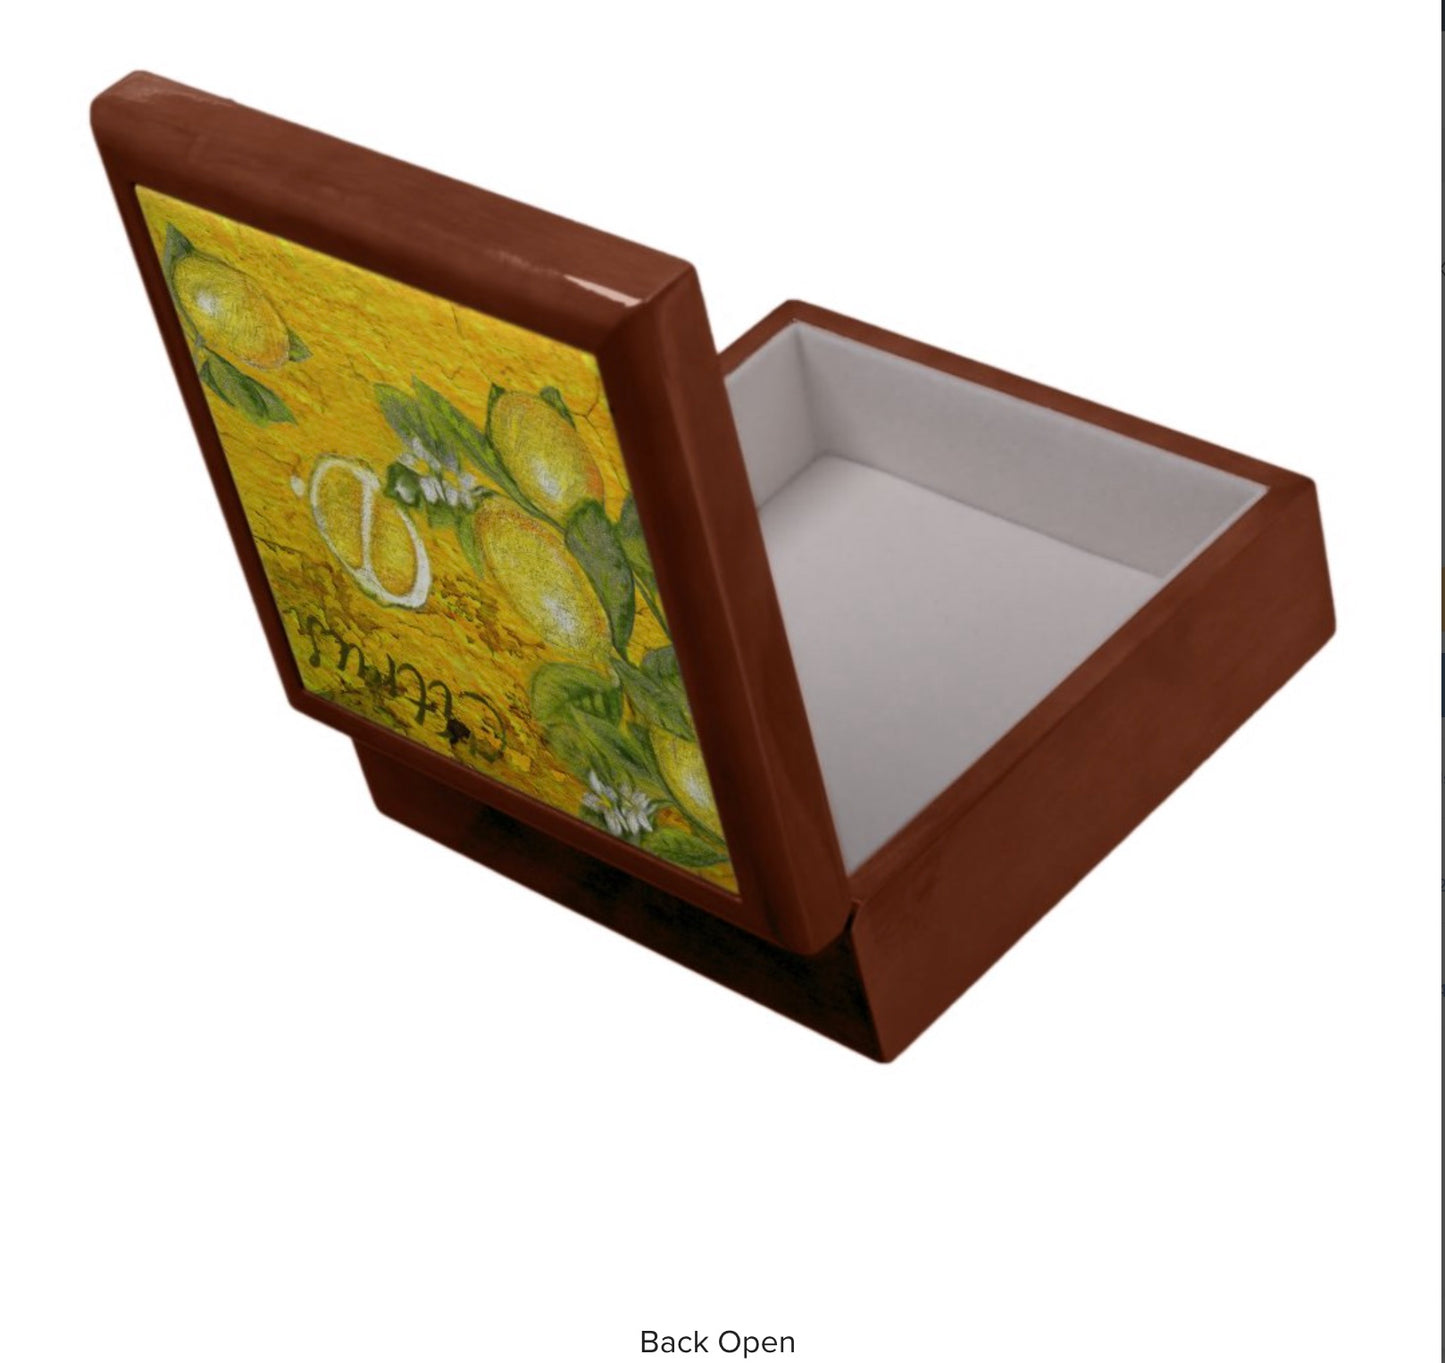 keepsake-box-golden-oak-citrus-design-back-open